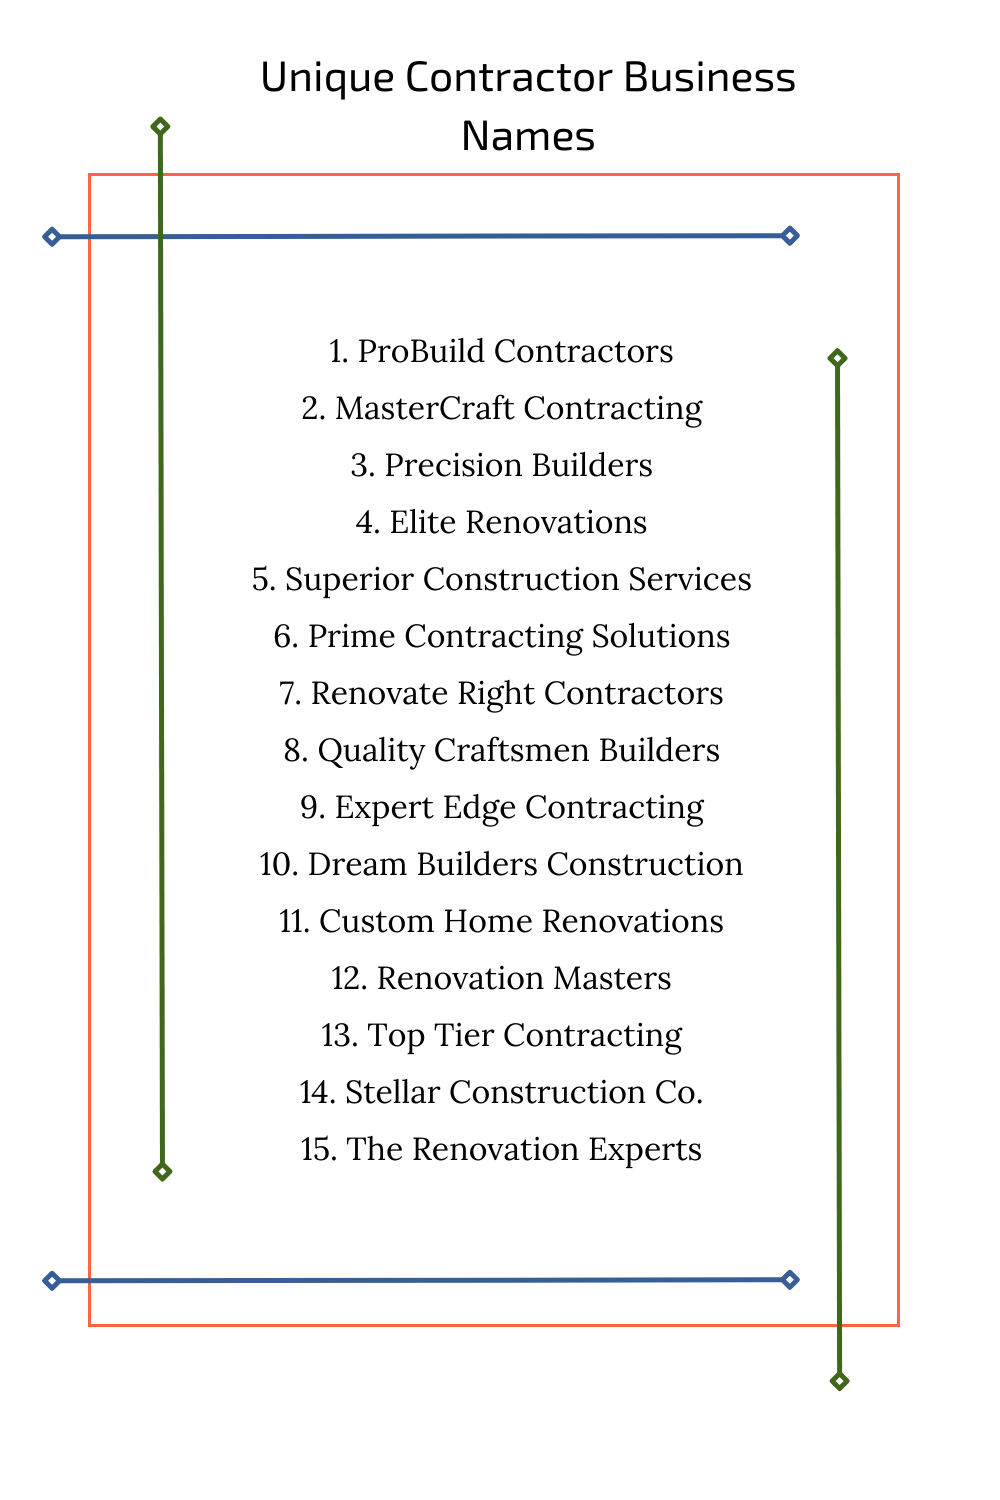 Unique Contractor Business Names